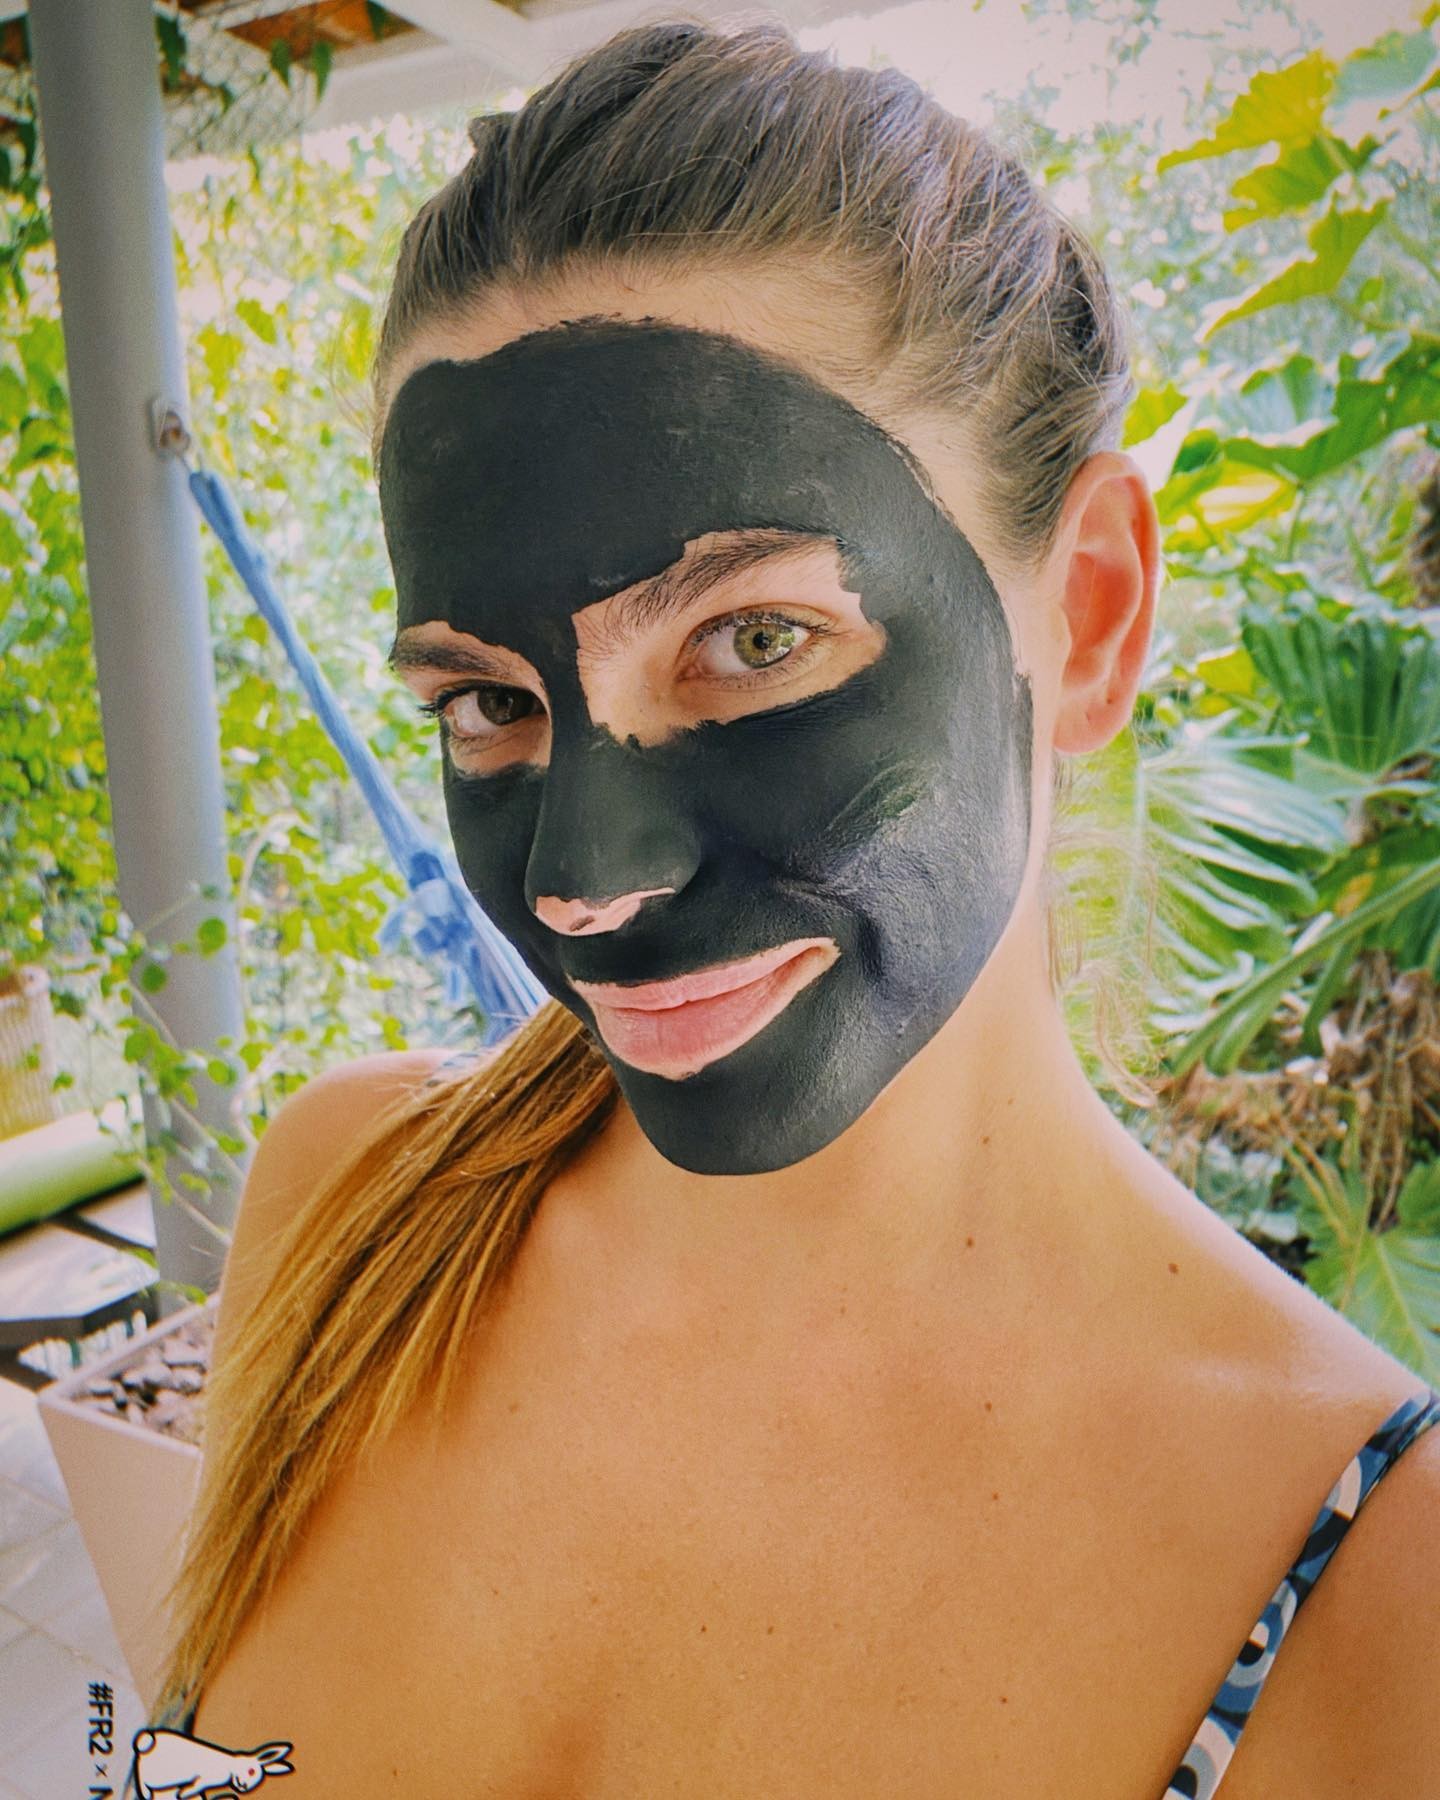 Mariana Goldfarb cuida da pele facial com máscara de tratamento (Foto: Reprodução/Instagram)